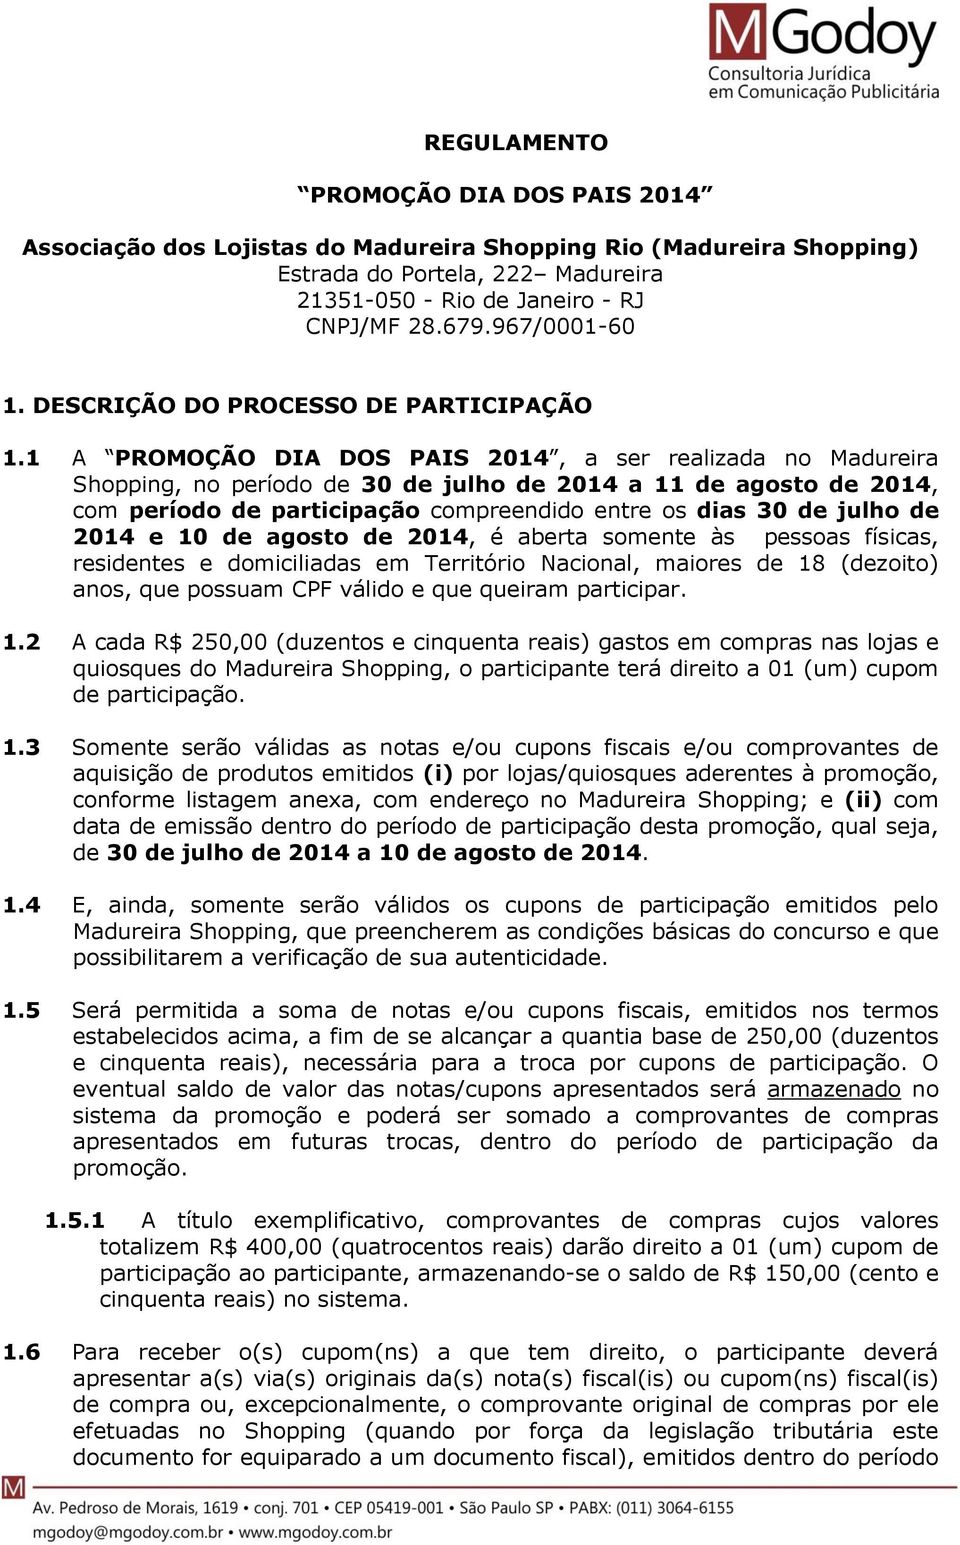 1 A PROMOÇÃO DIA DOS PAIS 2014, a ser realizada no Madureira Shopping, no período de 30 de julho de 2014 a 11 de agosto de 2014, com período de participação compreendido entre os dias 30 de julho de